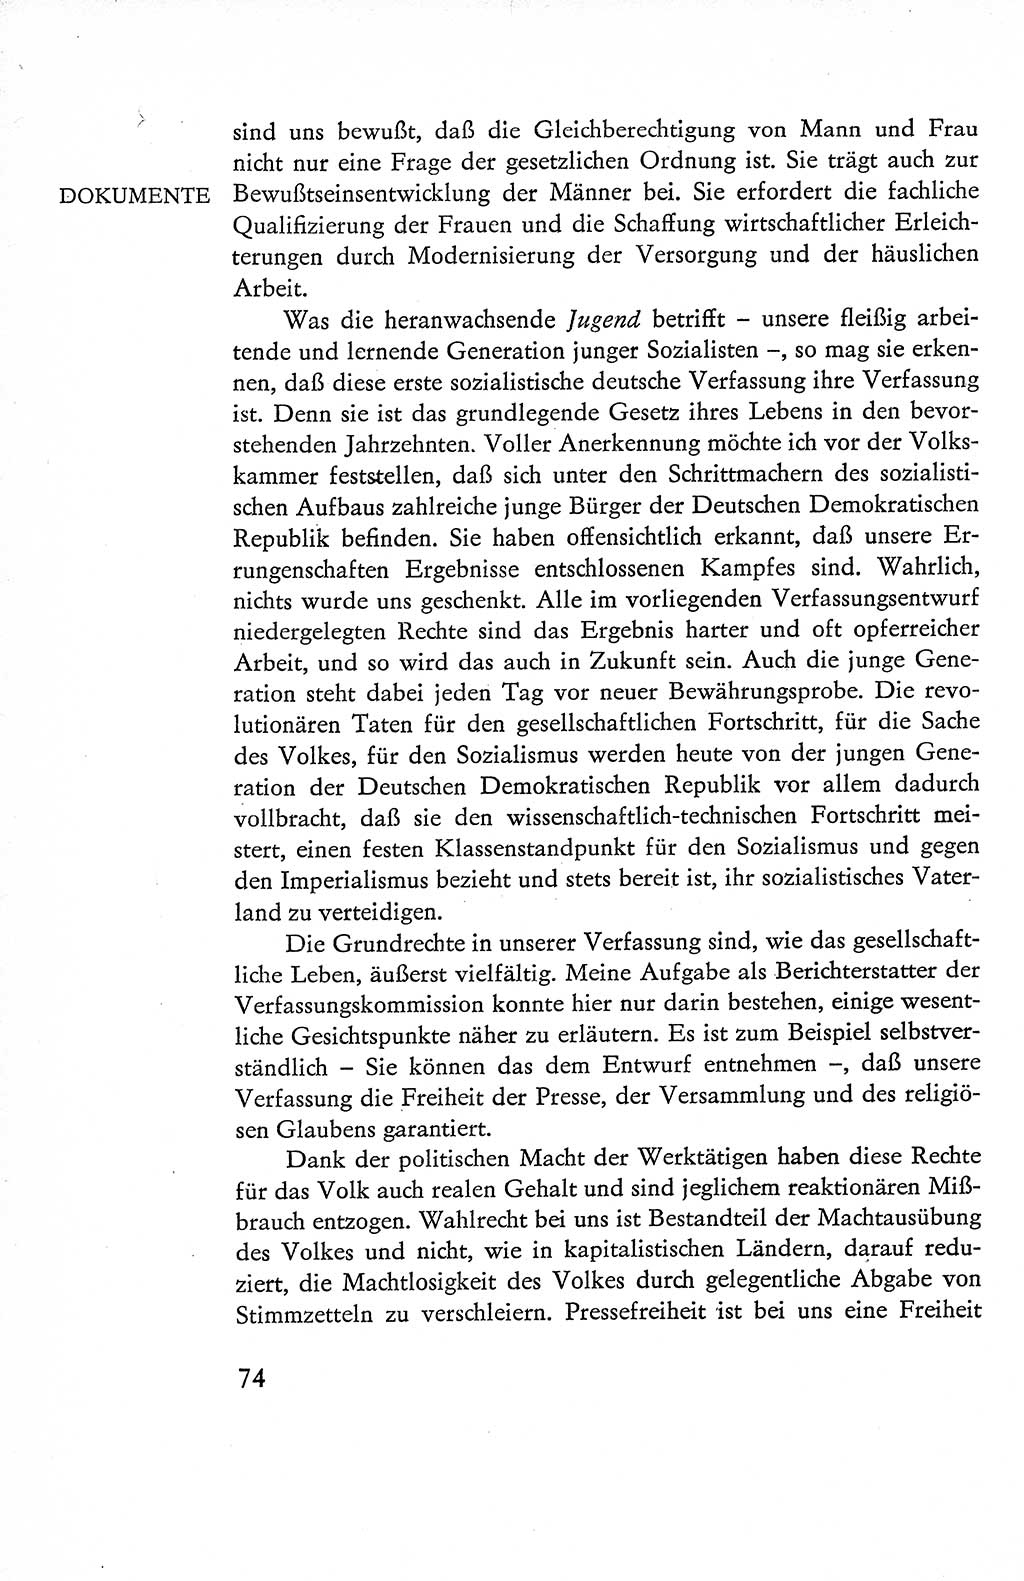 Verfassung der Deutschen Demokratischen Republik (DDR), Dokumente, Kommentar 1969, Band 1, Seite 74 (Verf. DDR Dok. Komm. 1969, Bd. 1, S. 74)